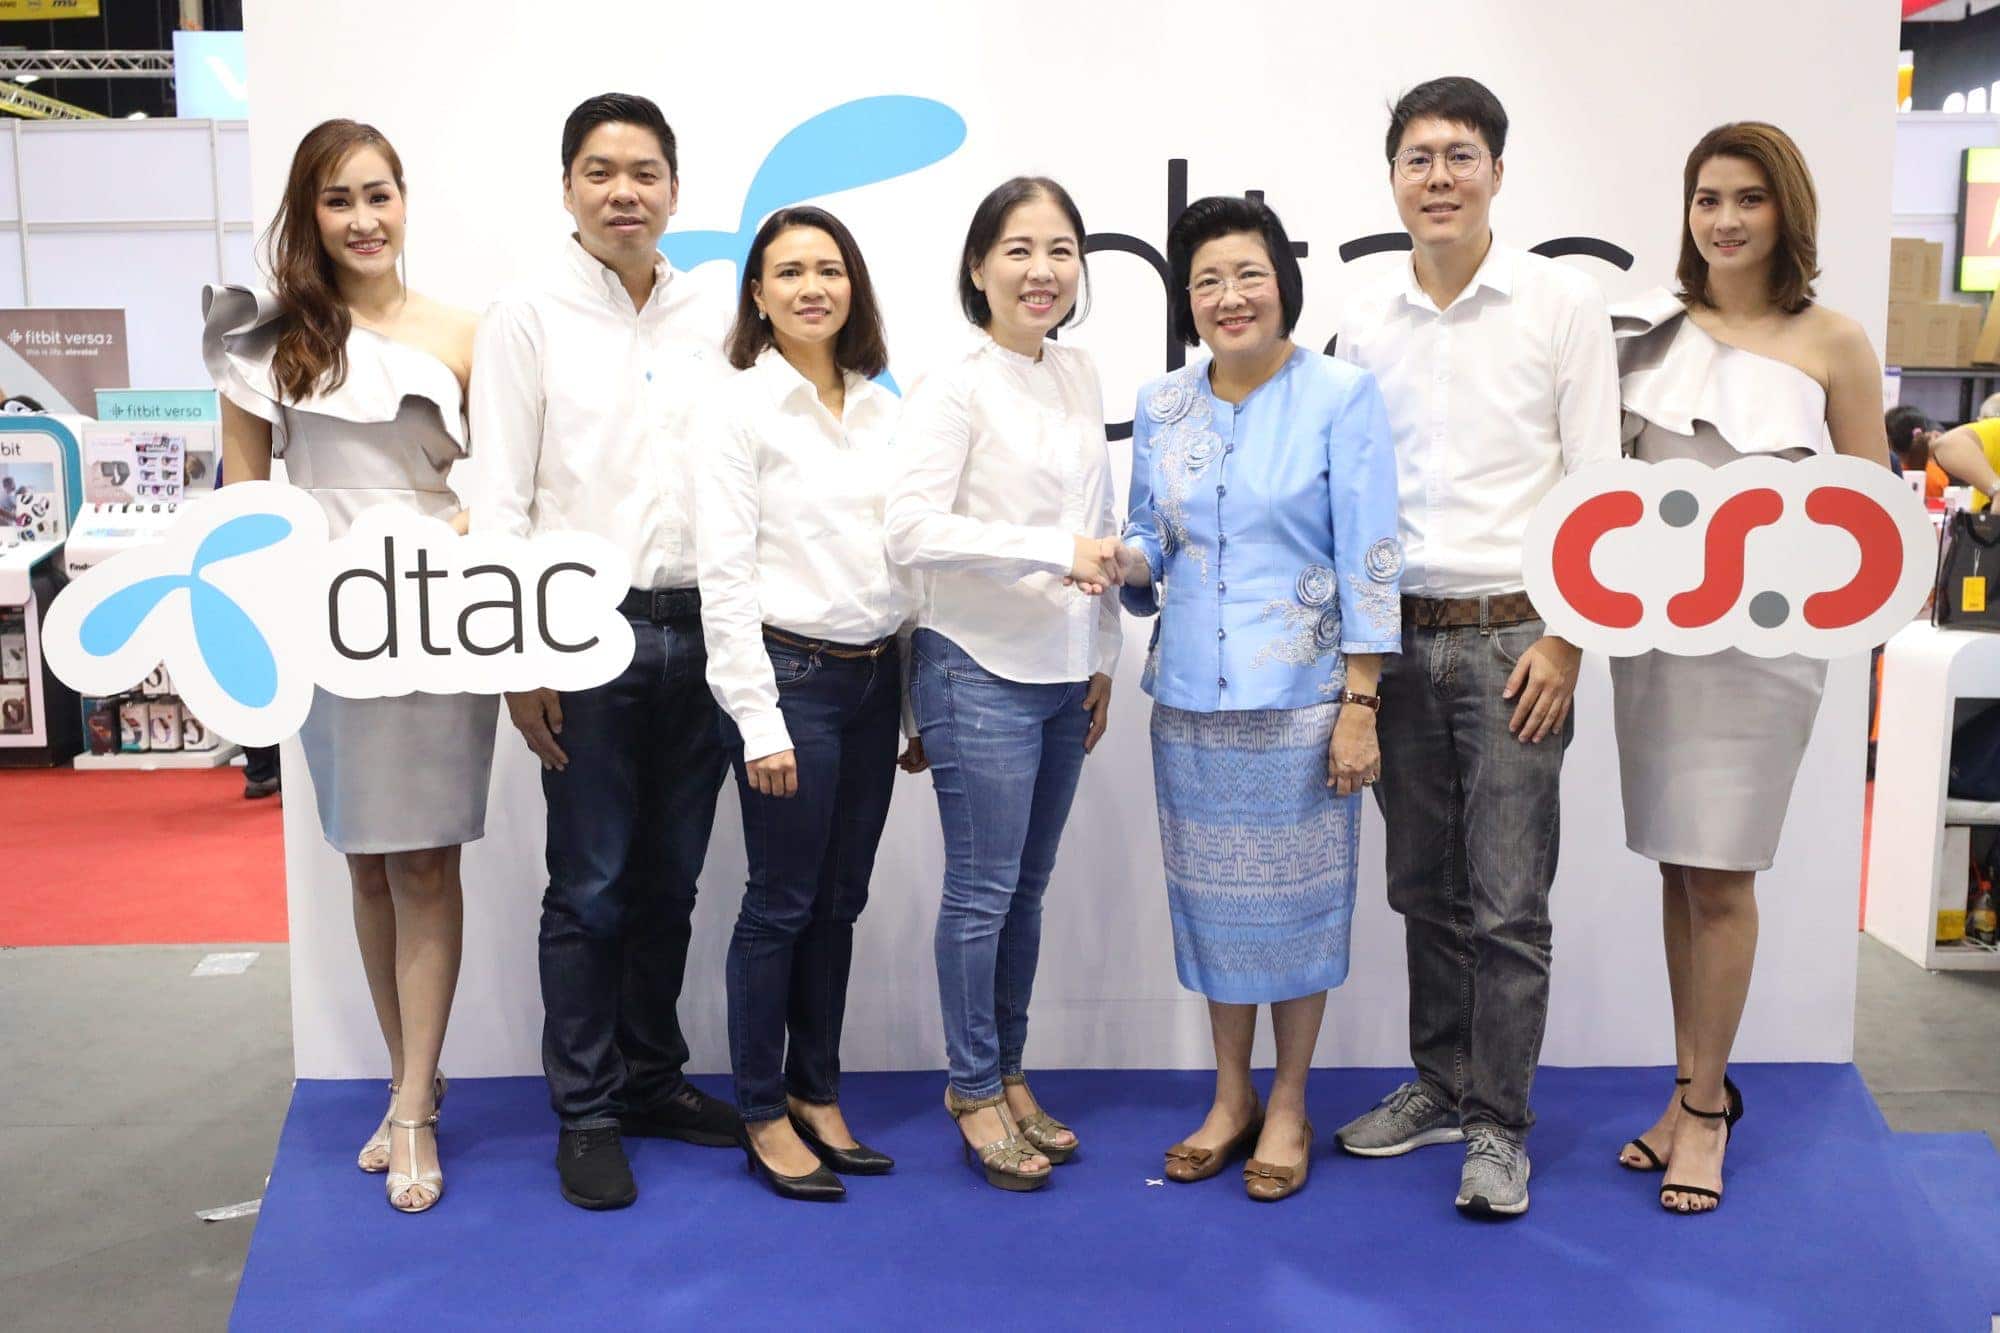 Dtac ปั๊มยอดขายไตรมาส 4 จับมือ CSC ผู้จำหน่ายมือถือรายใหญ่ท๊อป 4 ของไทย ในงาน Thailand Mobile Expo 2019 1